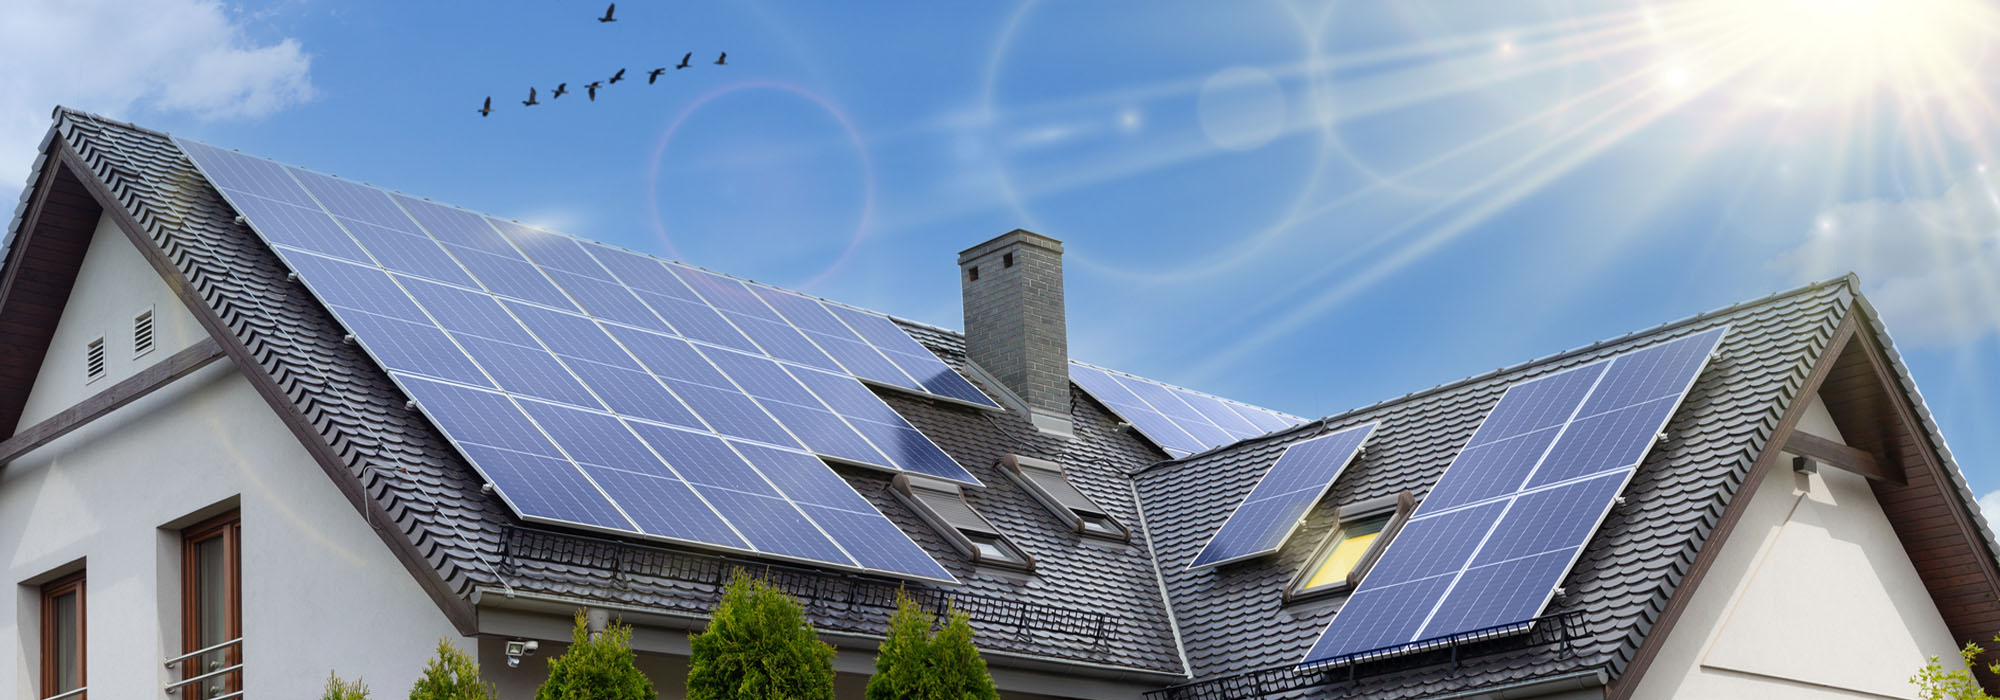 Solarstrom produzieren mit Photovoltaikanlage